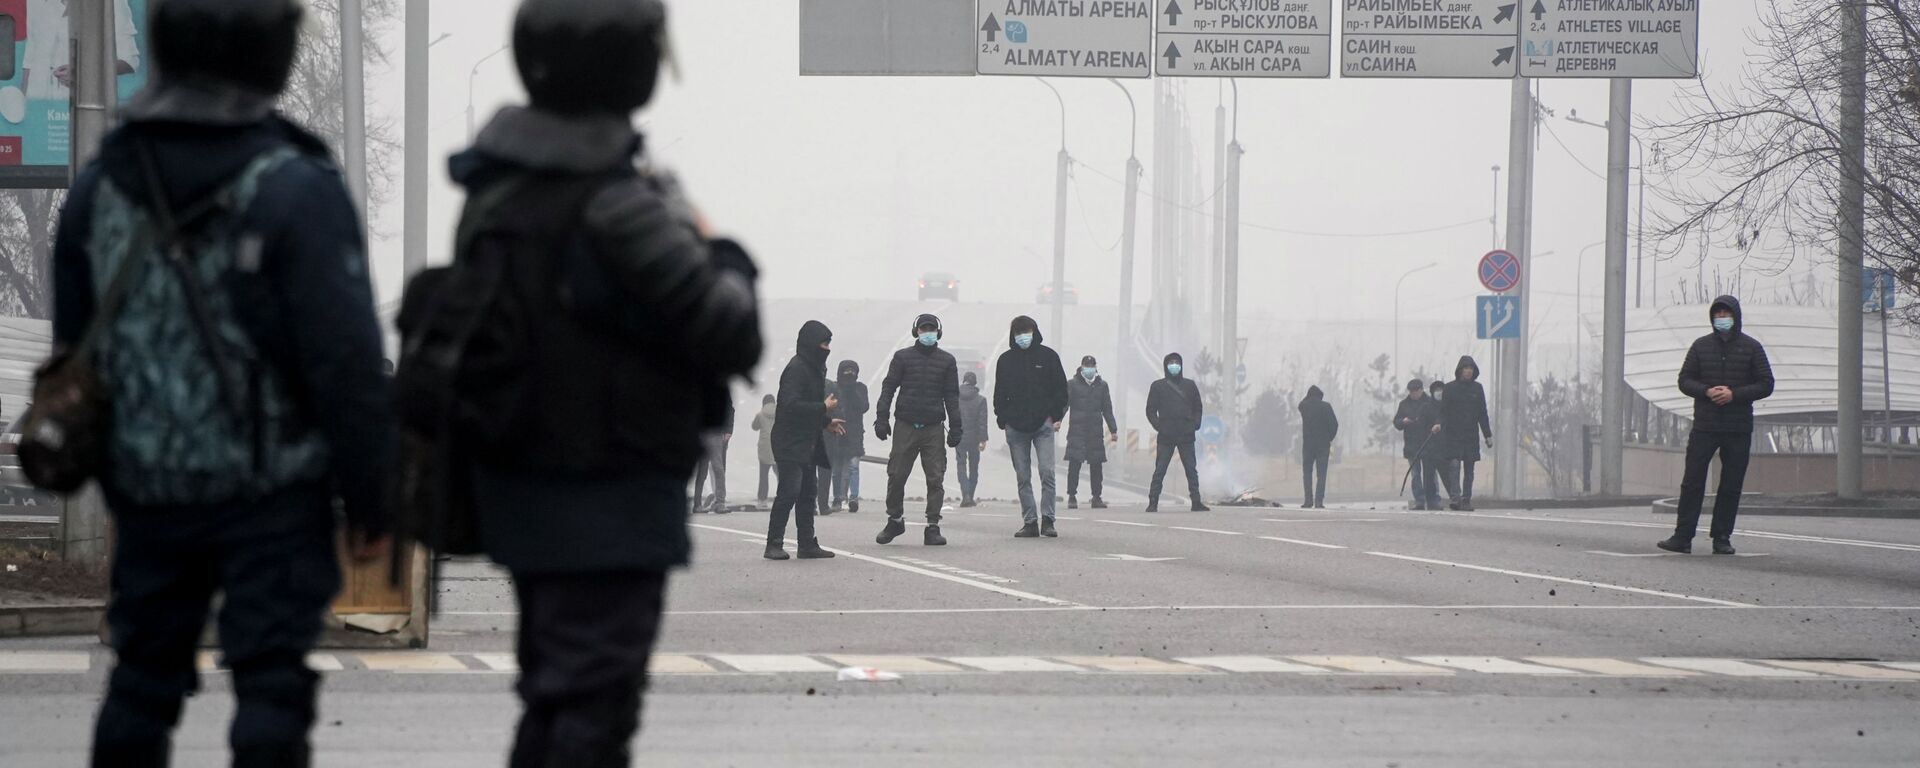 Демонстранты собираются перед полицией во время акции протеста в Алматы, Казахстан, в среду, 5 января 2022 г. - Sputnik Казахстан, 1920, 05.01.2023